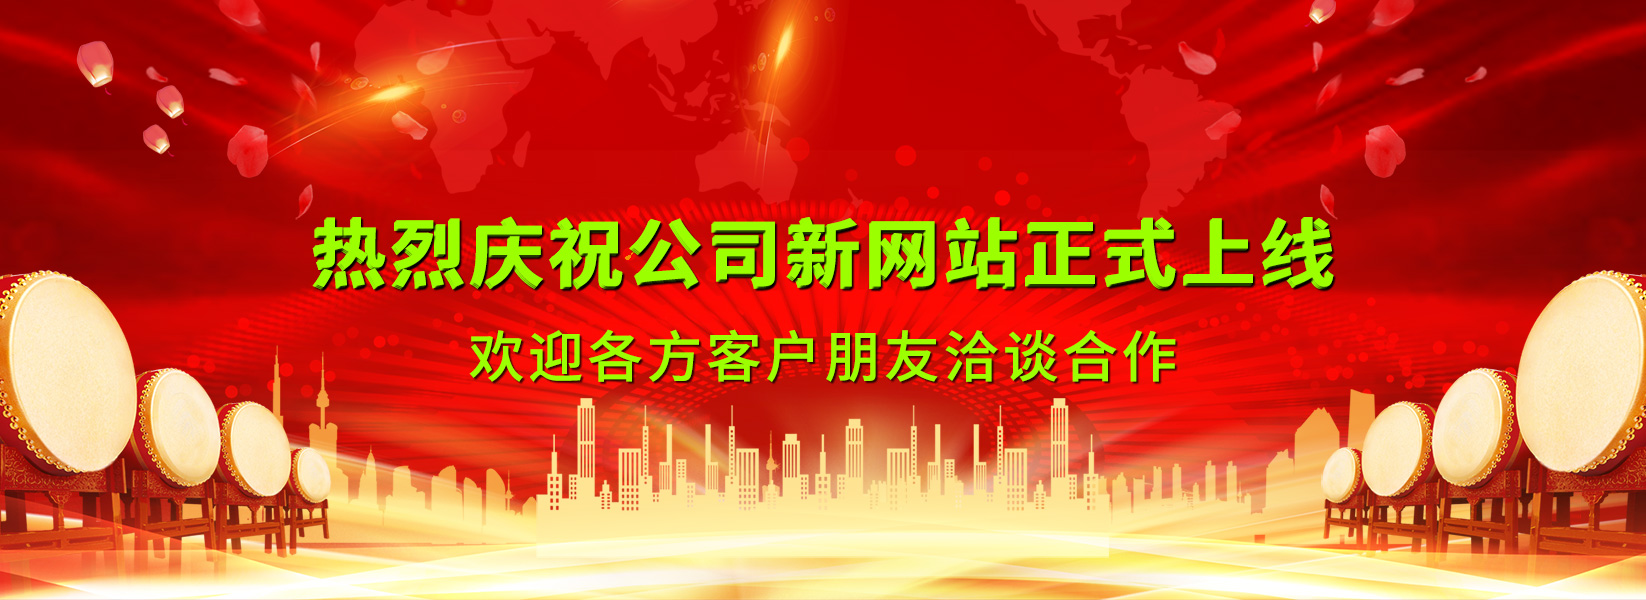 热烈庆祝广州八通官方网站正式改版上线